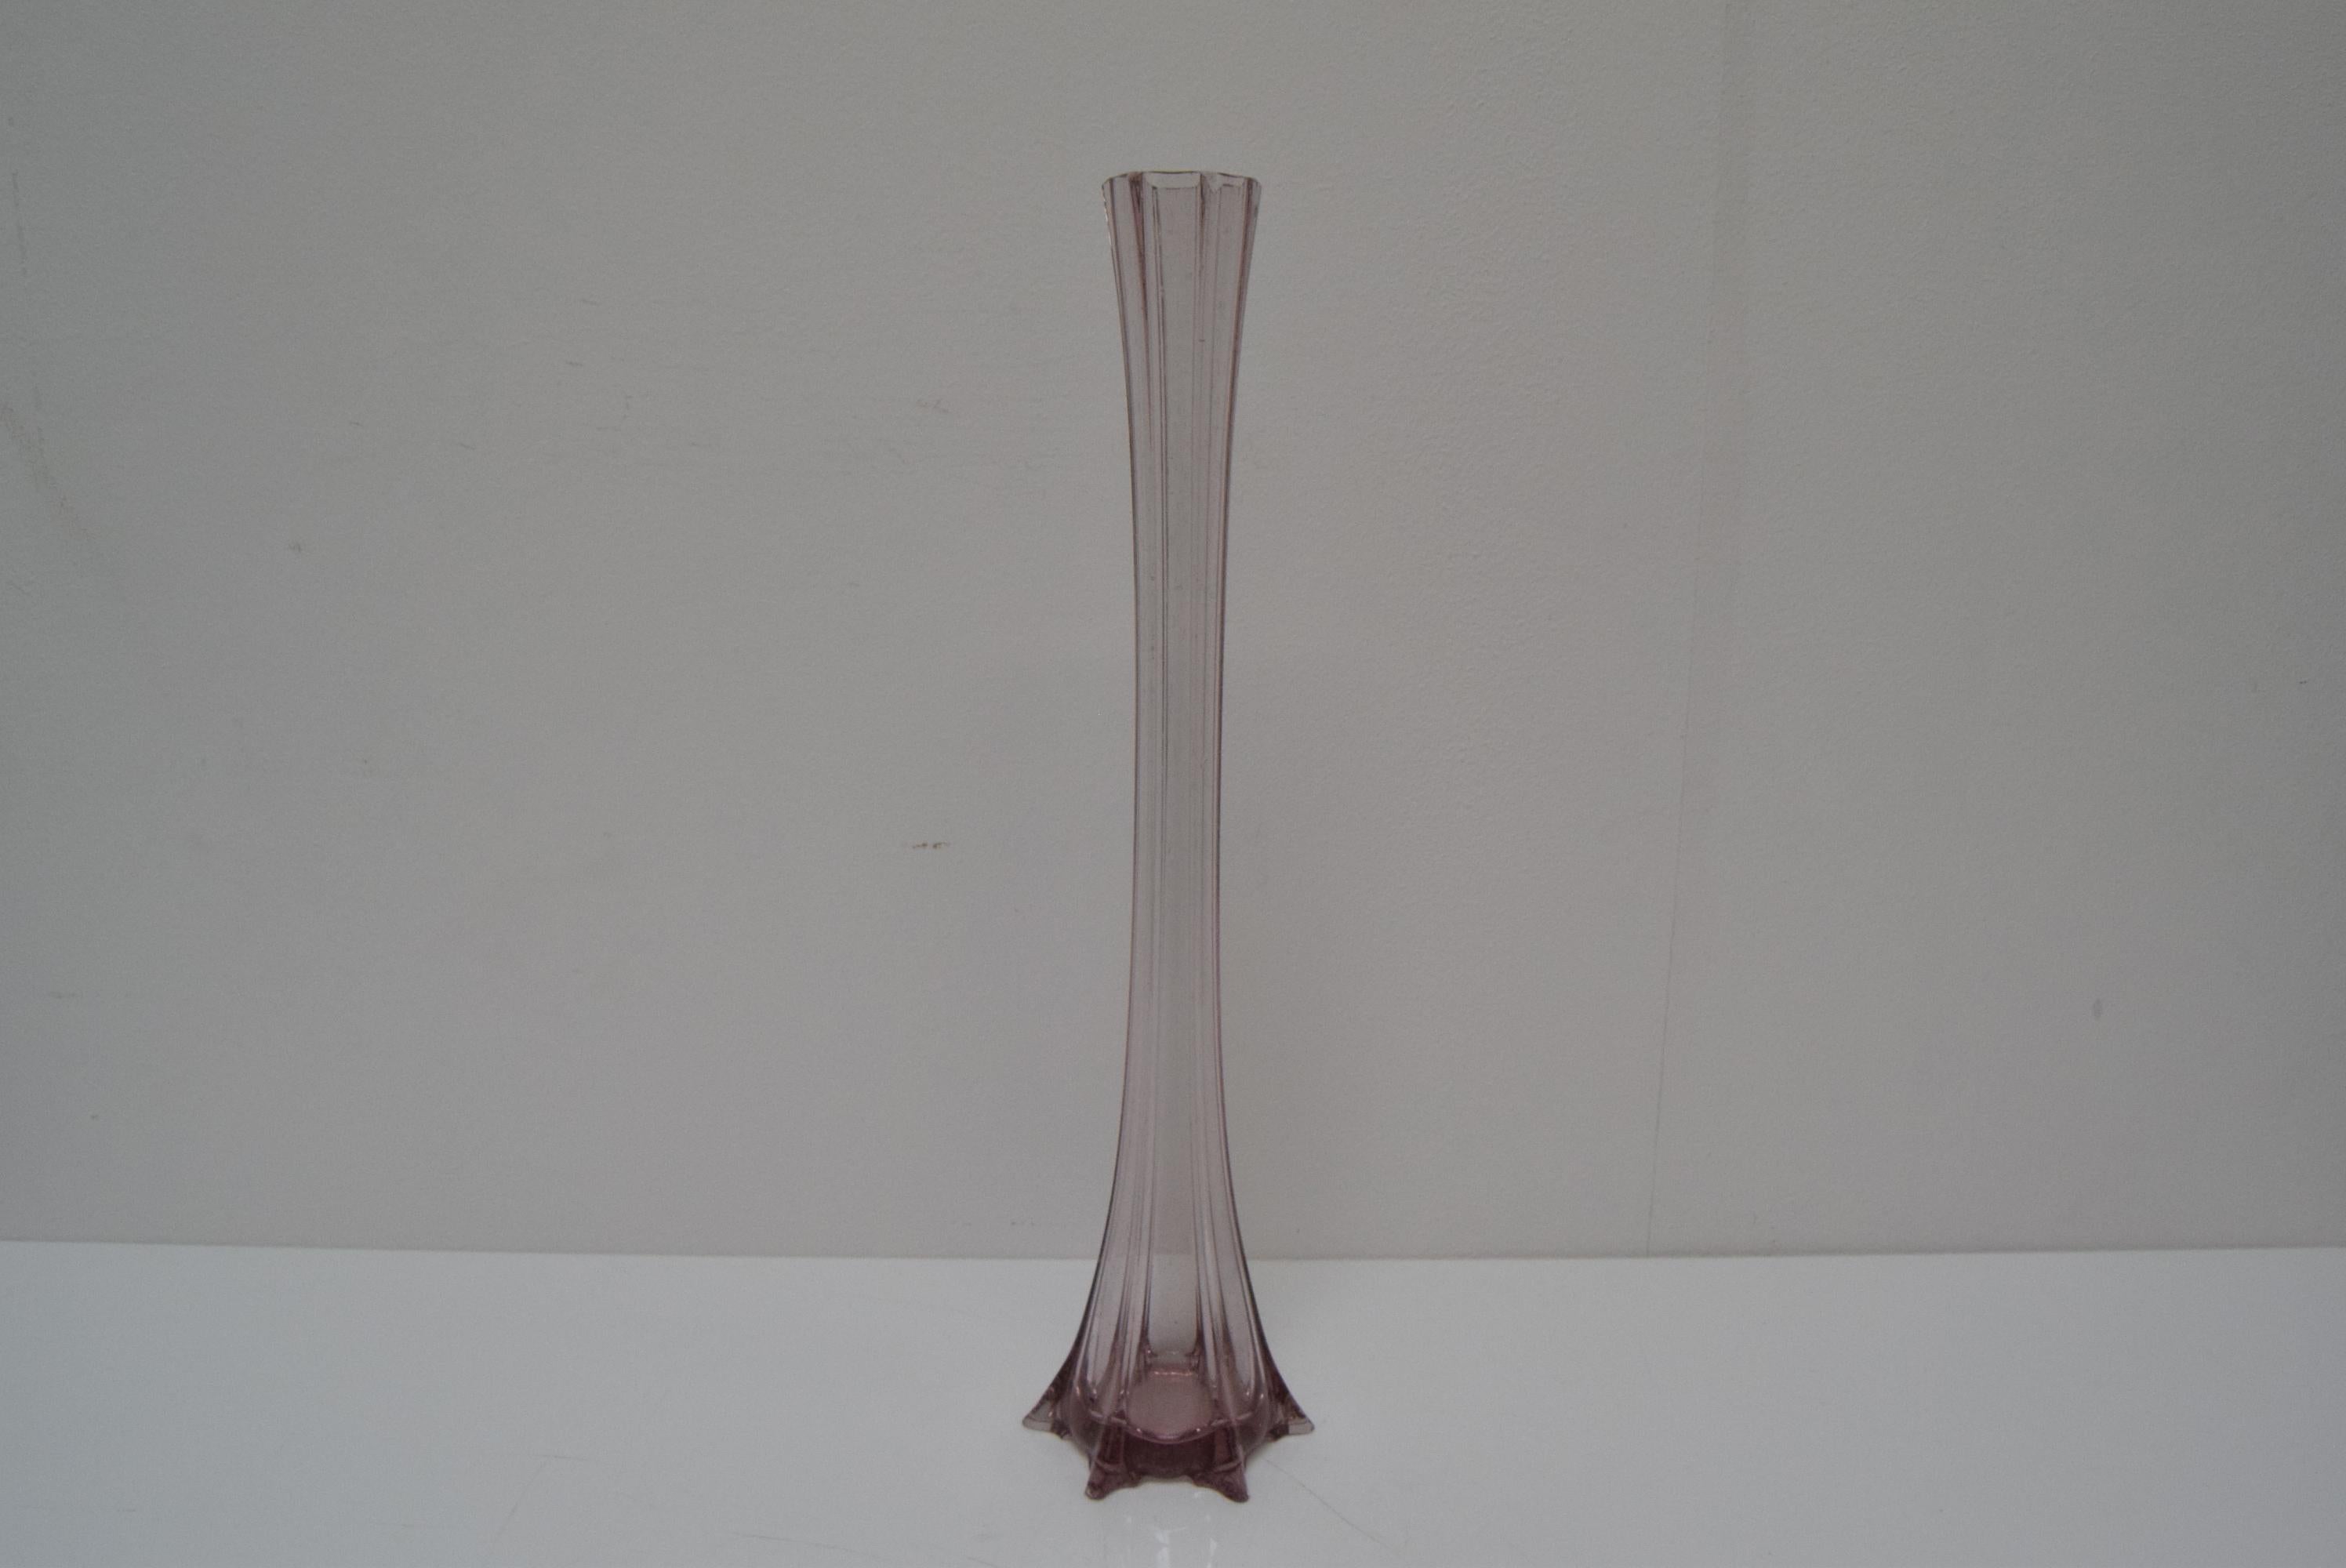 
Fabriqué en Tchécoslovaquie
En verre d'art
Le vase est ébréché au fond (voir foto)
Repolissage
Bon état d'origine.